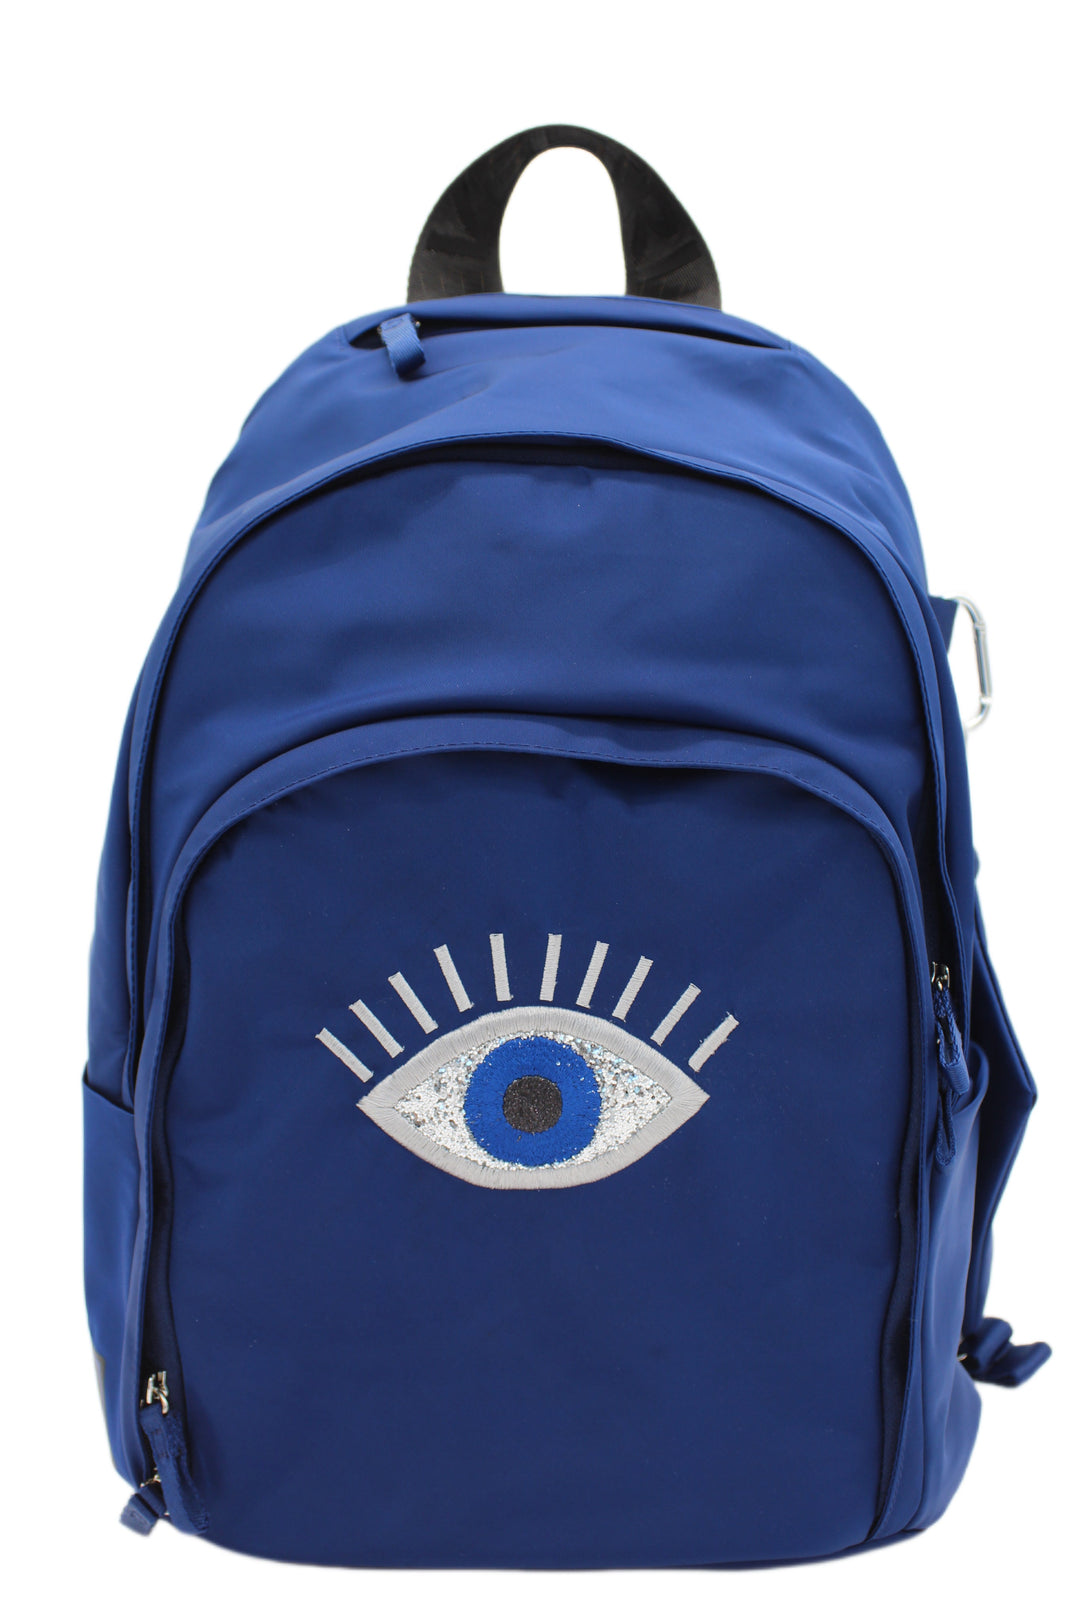 Veltri Sport Novelty Delaire Backpack - “Evil Eye”